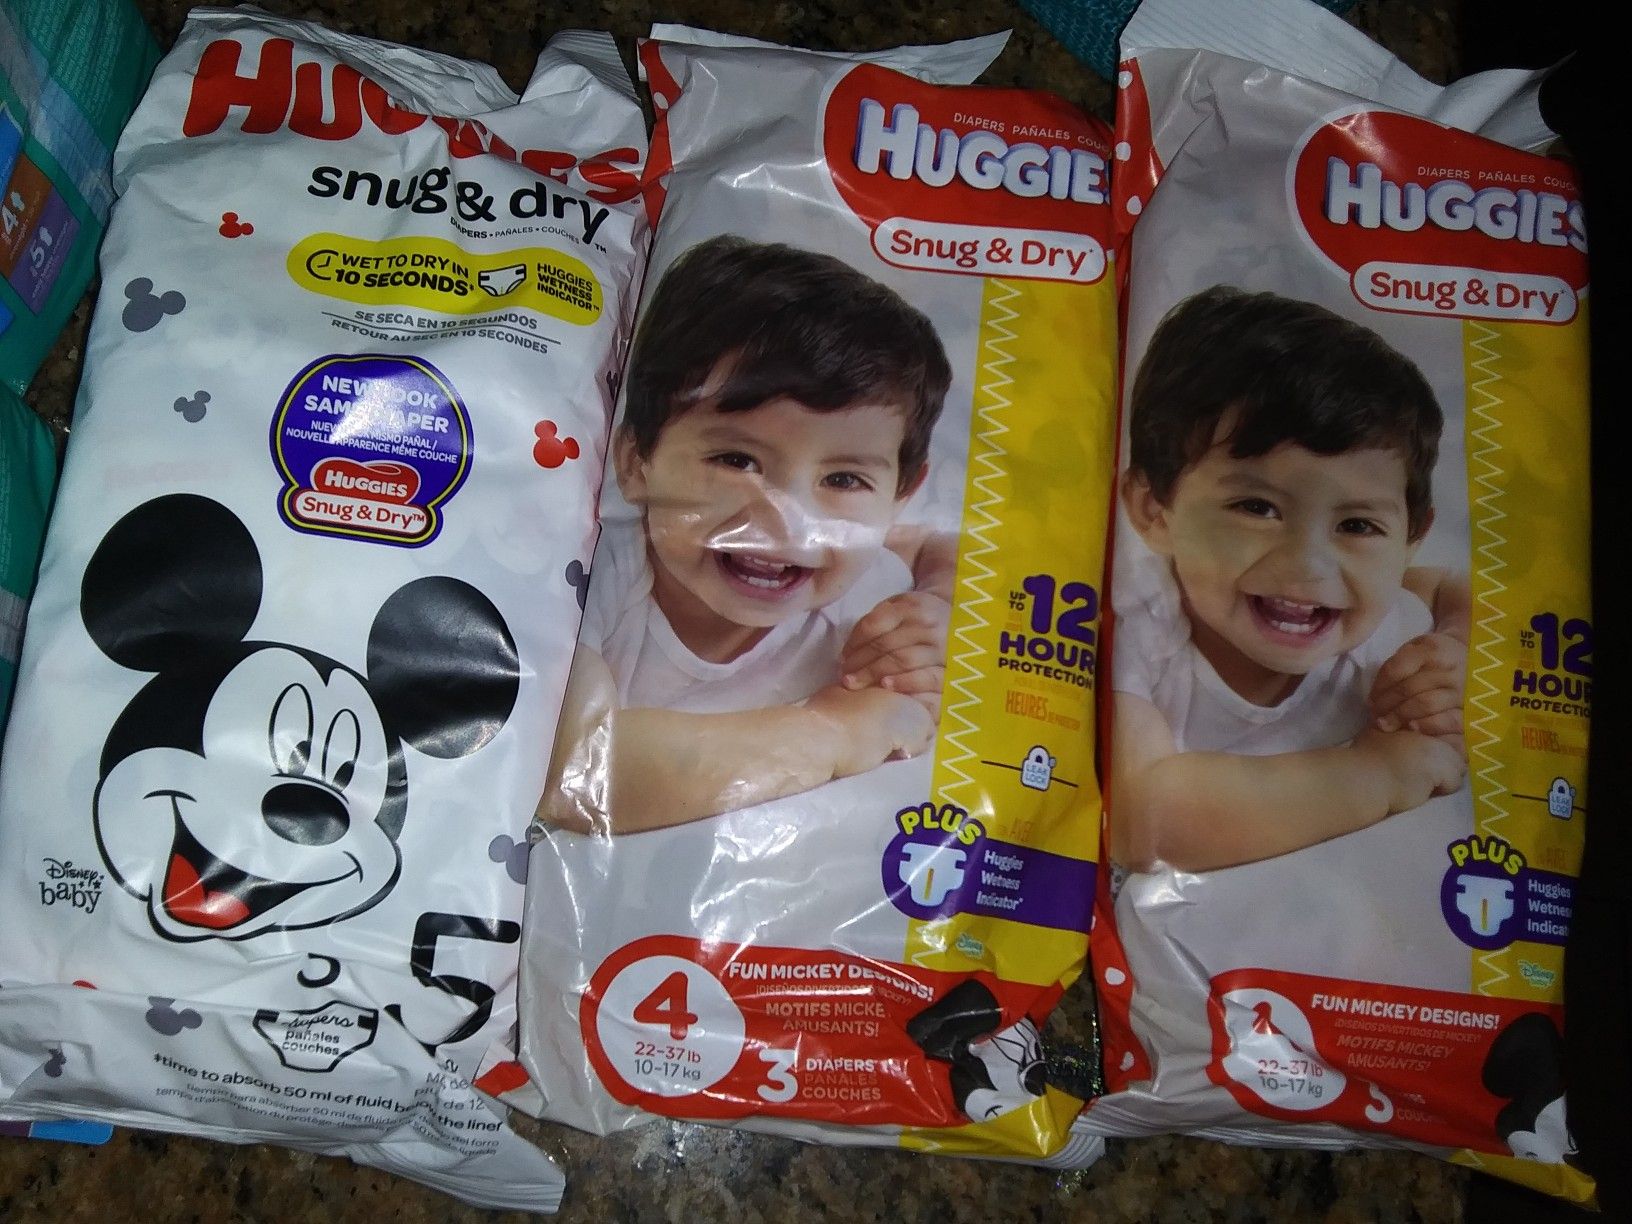 Huggies diapers 10 packs for $5